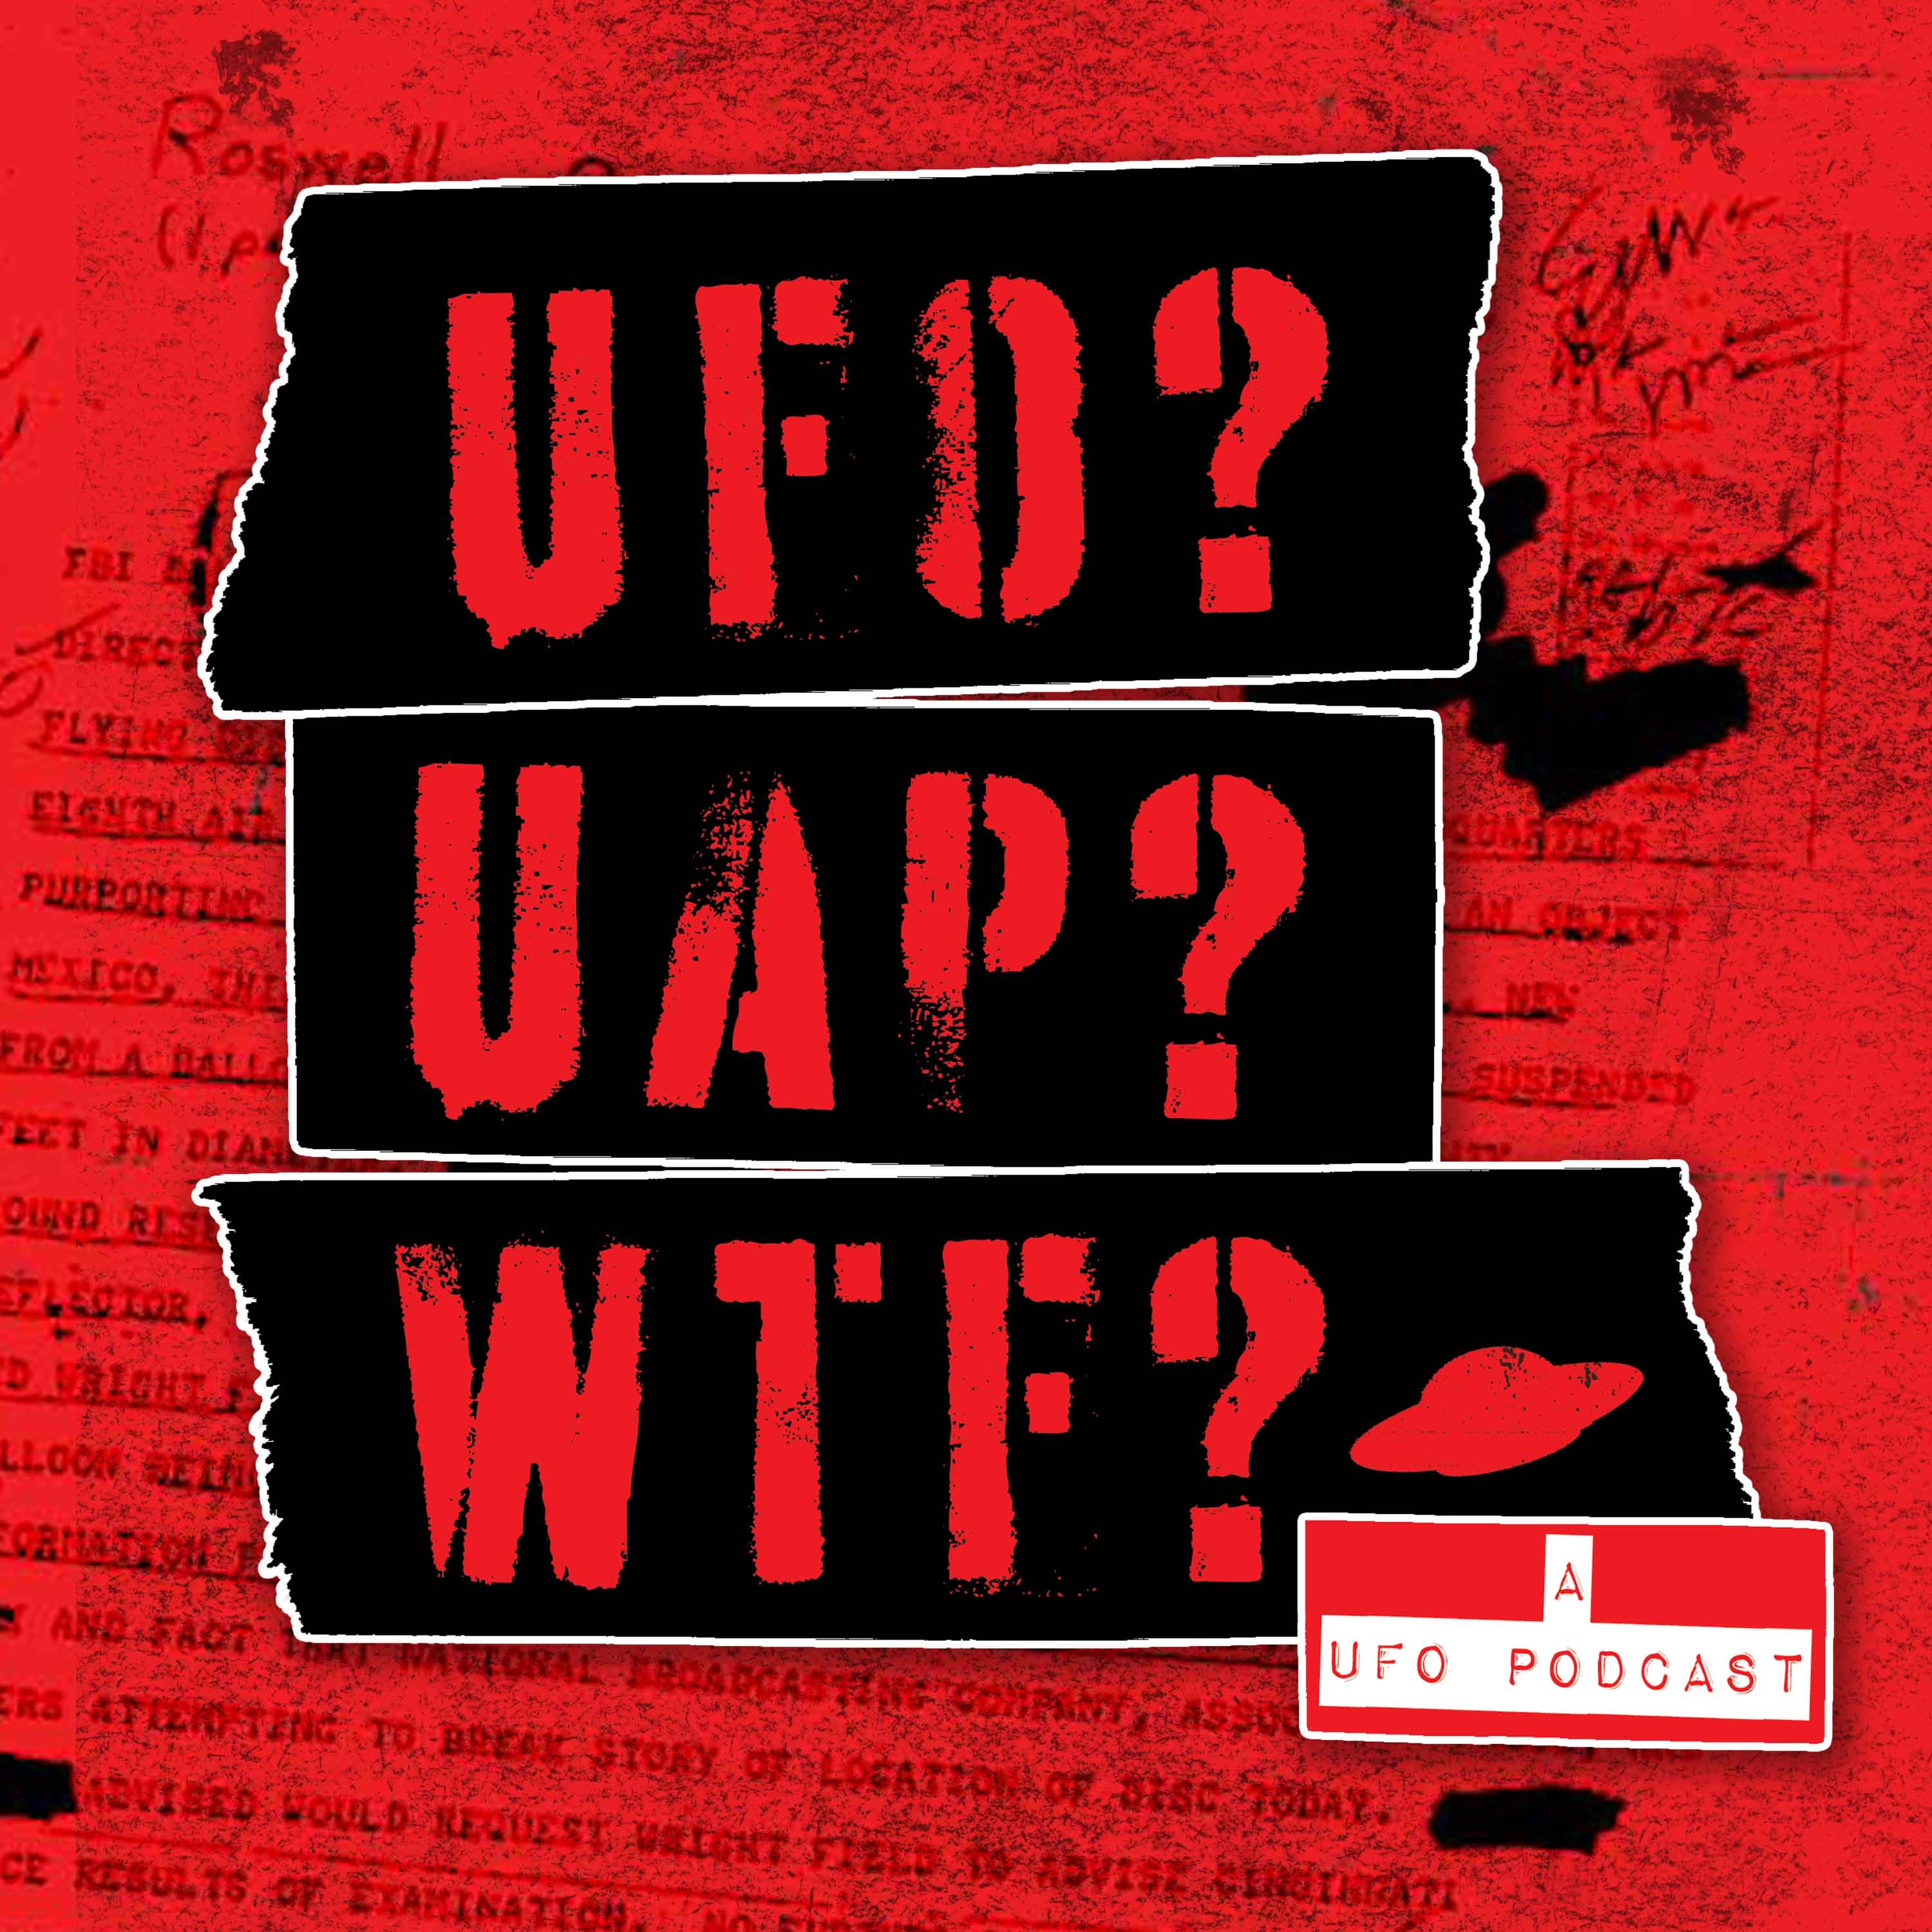 UFO? UAP? WTF? —a UFO podcast